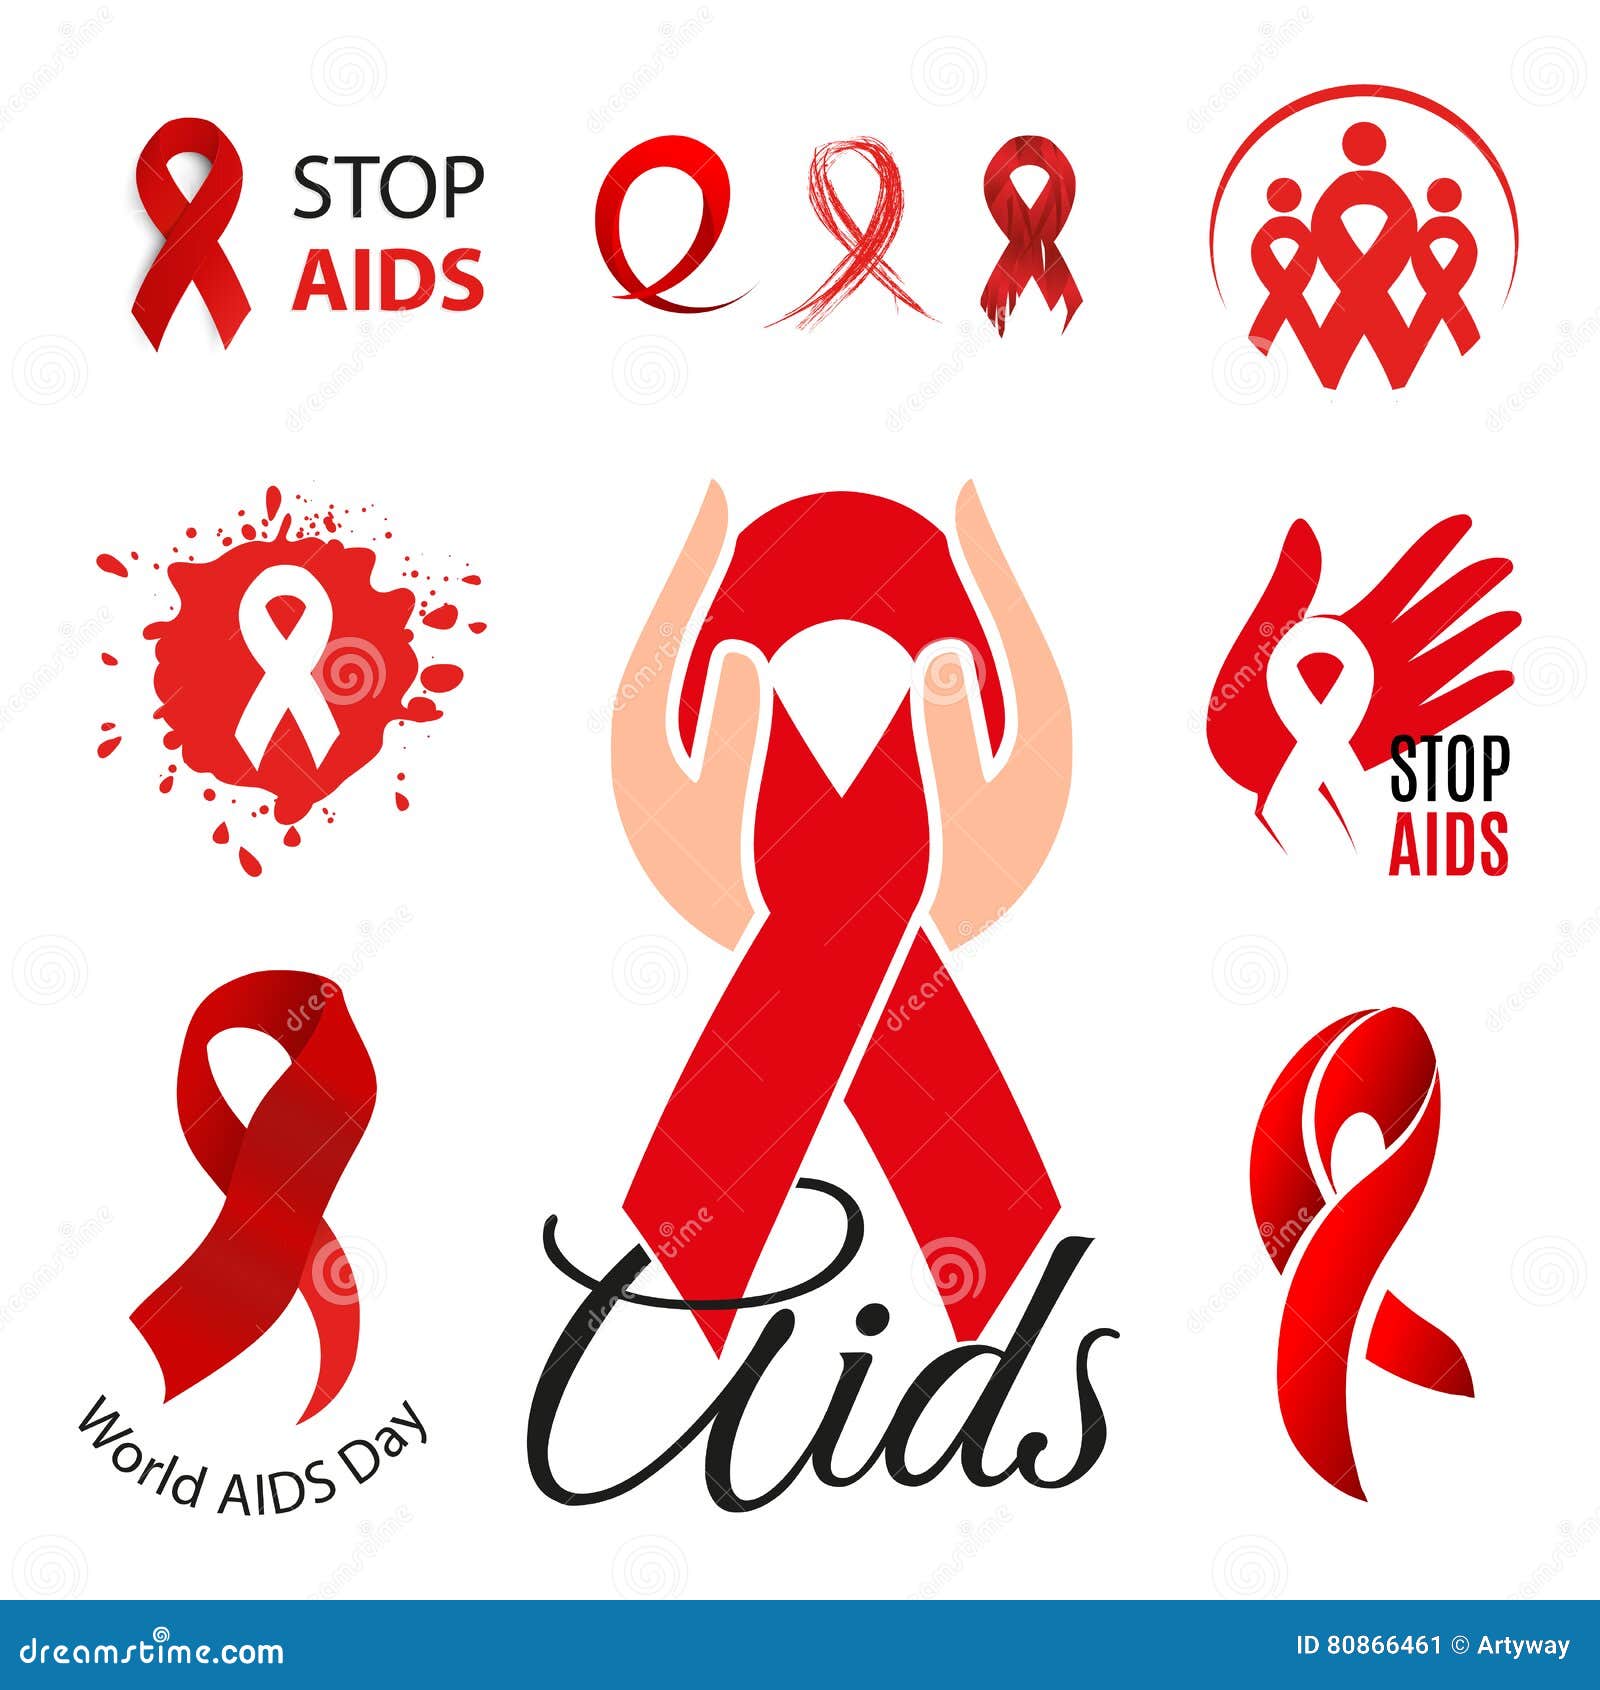 Red Ribbon là biểu tượng tình nguyện của các tổ chức giúp đỡ và cộng đồng đòi hỏi tôn trọng những người mắc bệnh lây nhiễm. Ngày Thế giới AIDS là một dịp quan trọng để nhấn mạnh tình hình của bệnh AIDS trên toàn thế giới. Hãy xem ảnh liên quan để hiểu rõ hơn về ý nghĩa của biểu tượng Red Ribbon và sự quan tâm đối với bệnh AIDS.